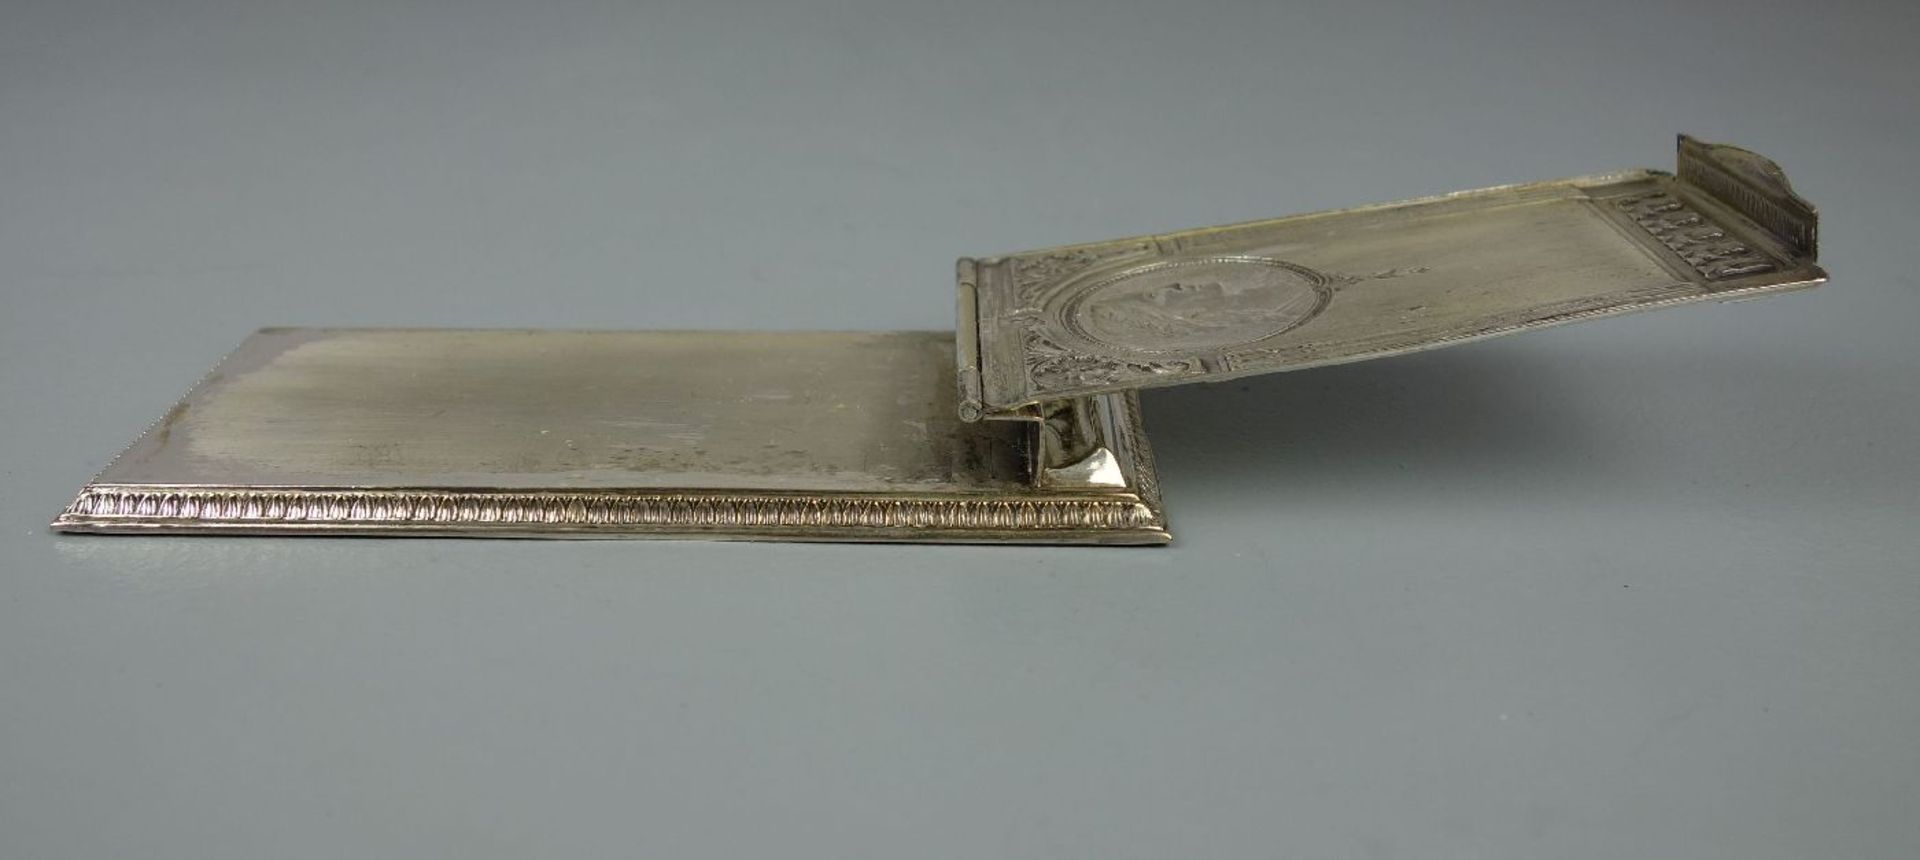 NOTIZBLOCK - HALTER / TANZKARTE / notepad holder, versilbertes Metall, um 1900. Rückseite - Bild 4 aus 5